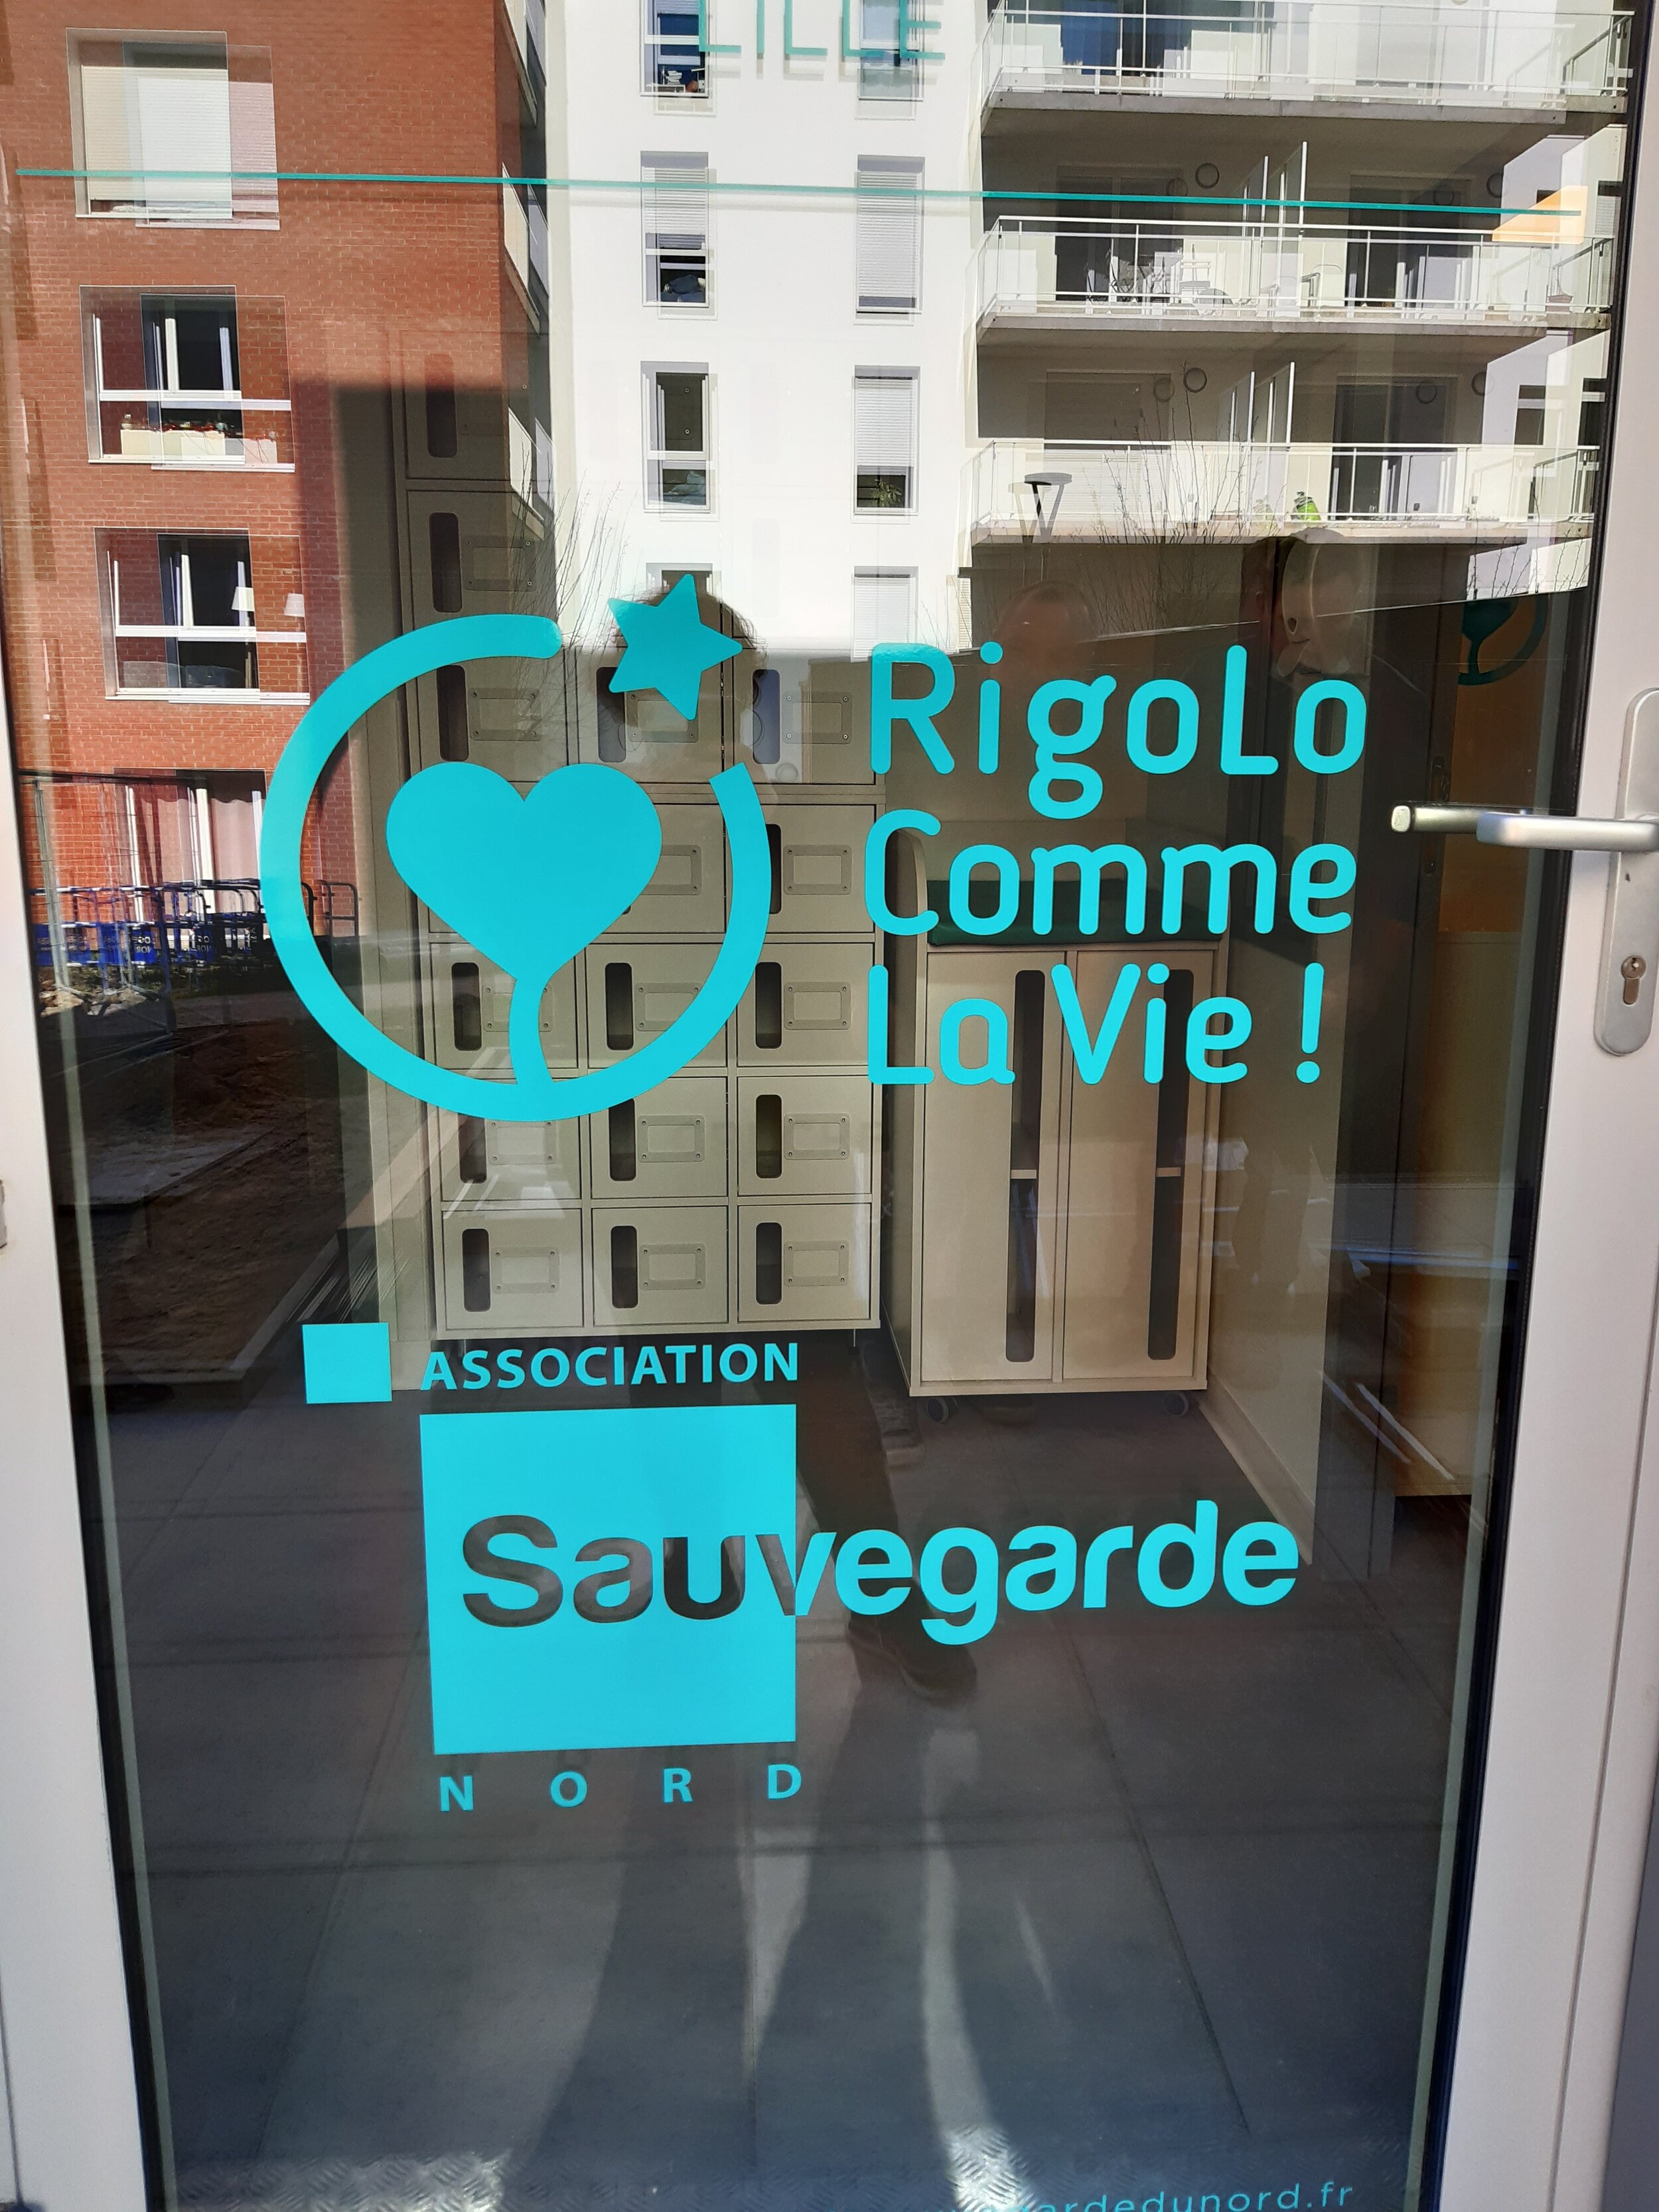 La Sauvegarde du Nord Rigolo Comme La Vie daycare centre, an innovative project unique in France